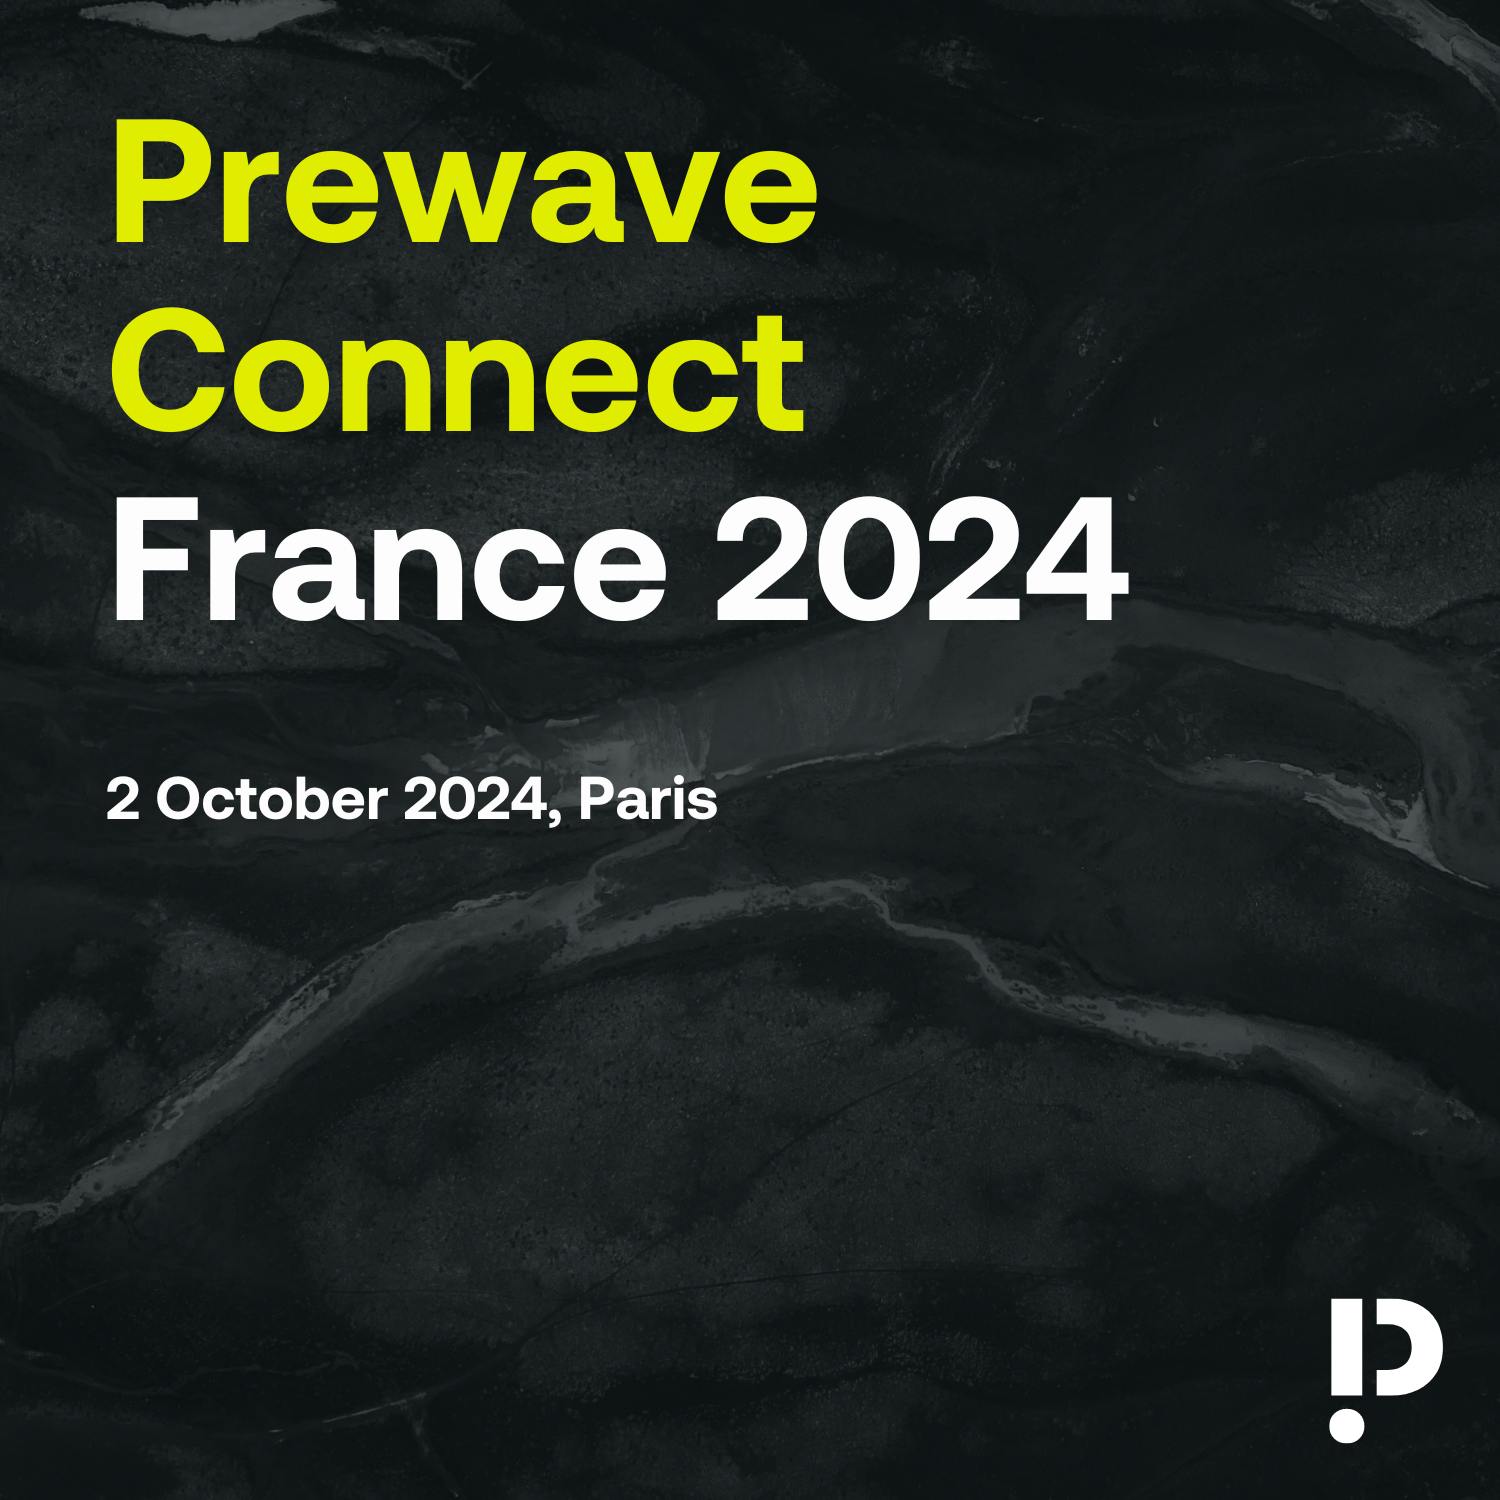 プレウェーブ・コネクト・フランス 2024